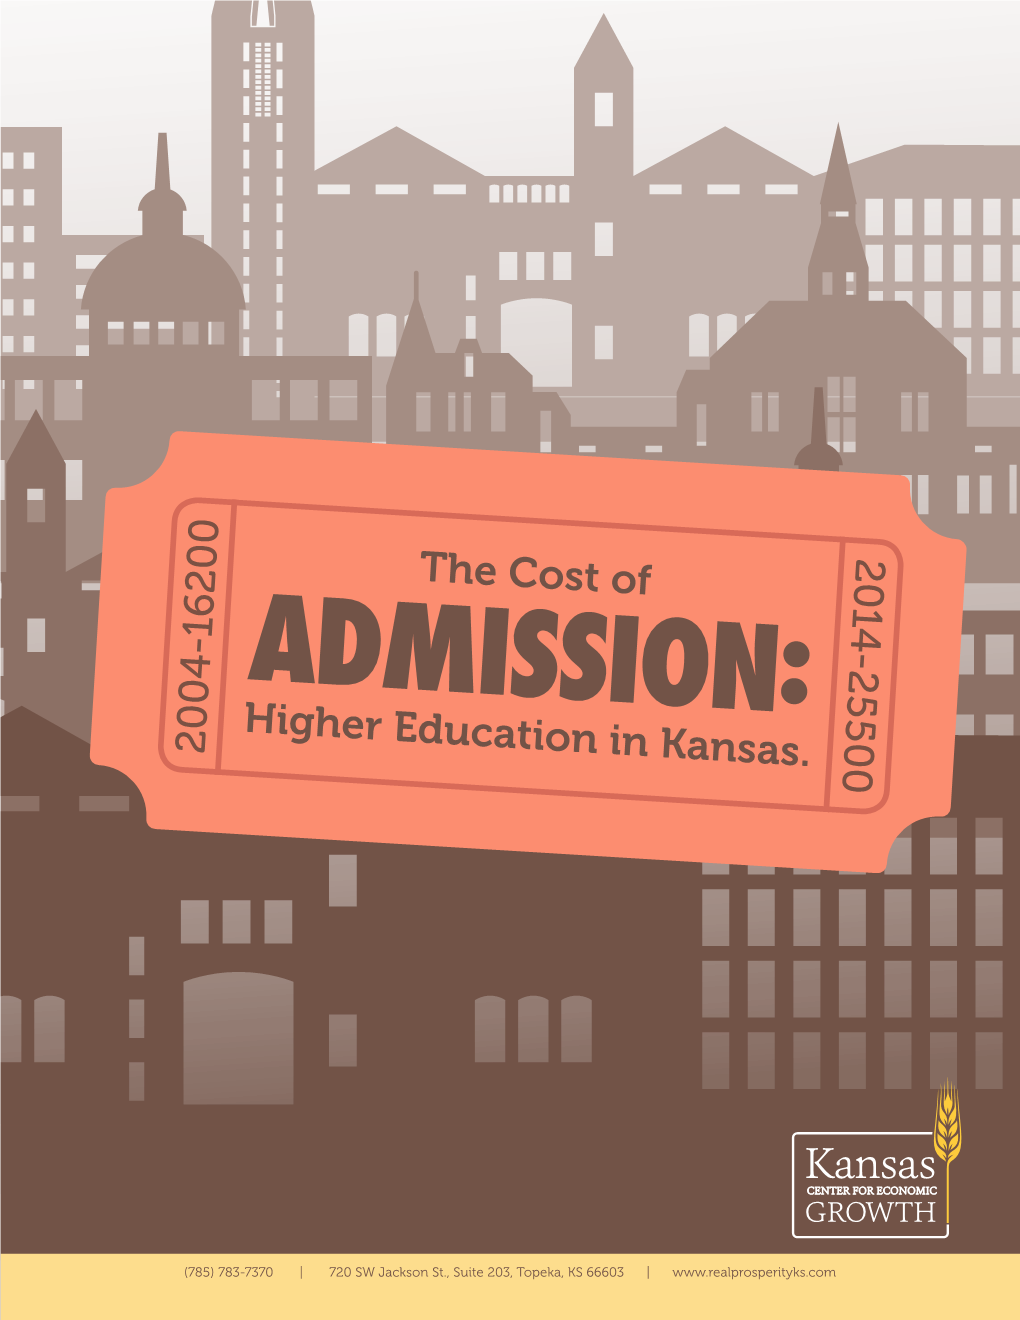 Higher Education in Kansas